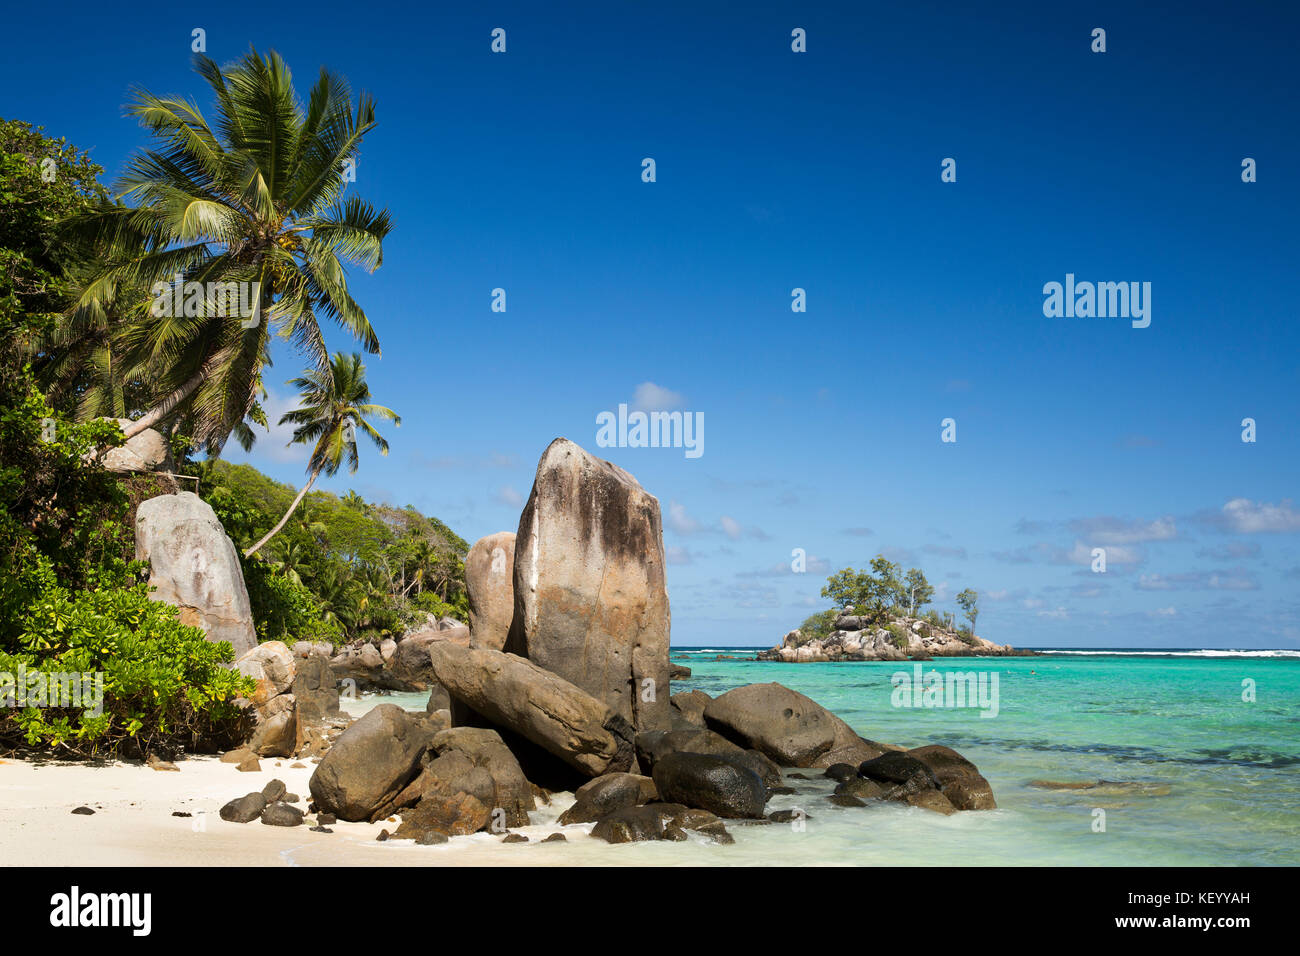 La Seychelles, Mahe, Anse Royale, Ile Souris, spiaggia, granito formazione di rocce scolpite dal mare Foto Stock